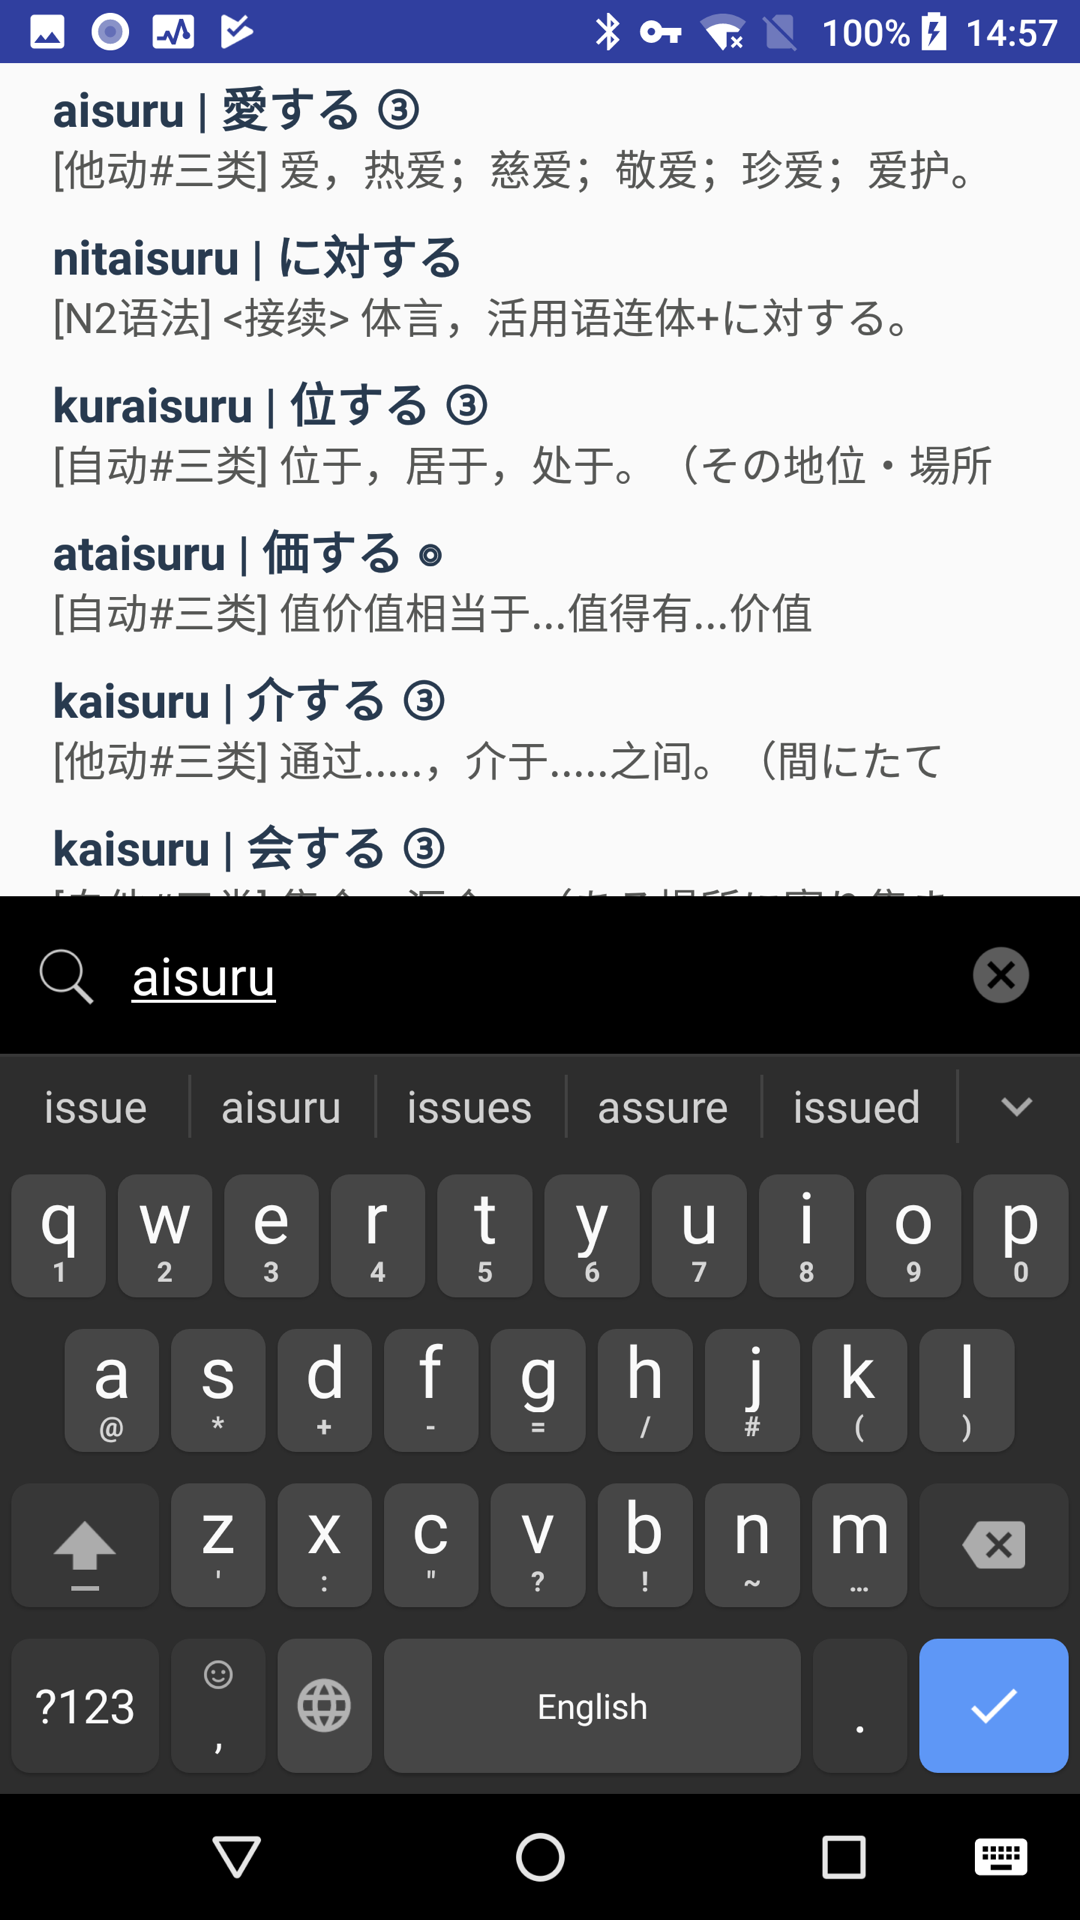 实用日语词典官方客户端APP 4.7.4截图